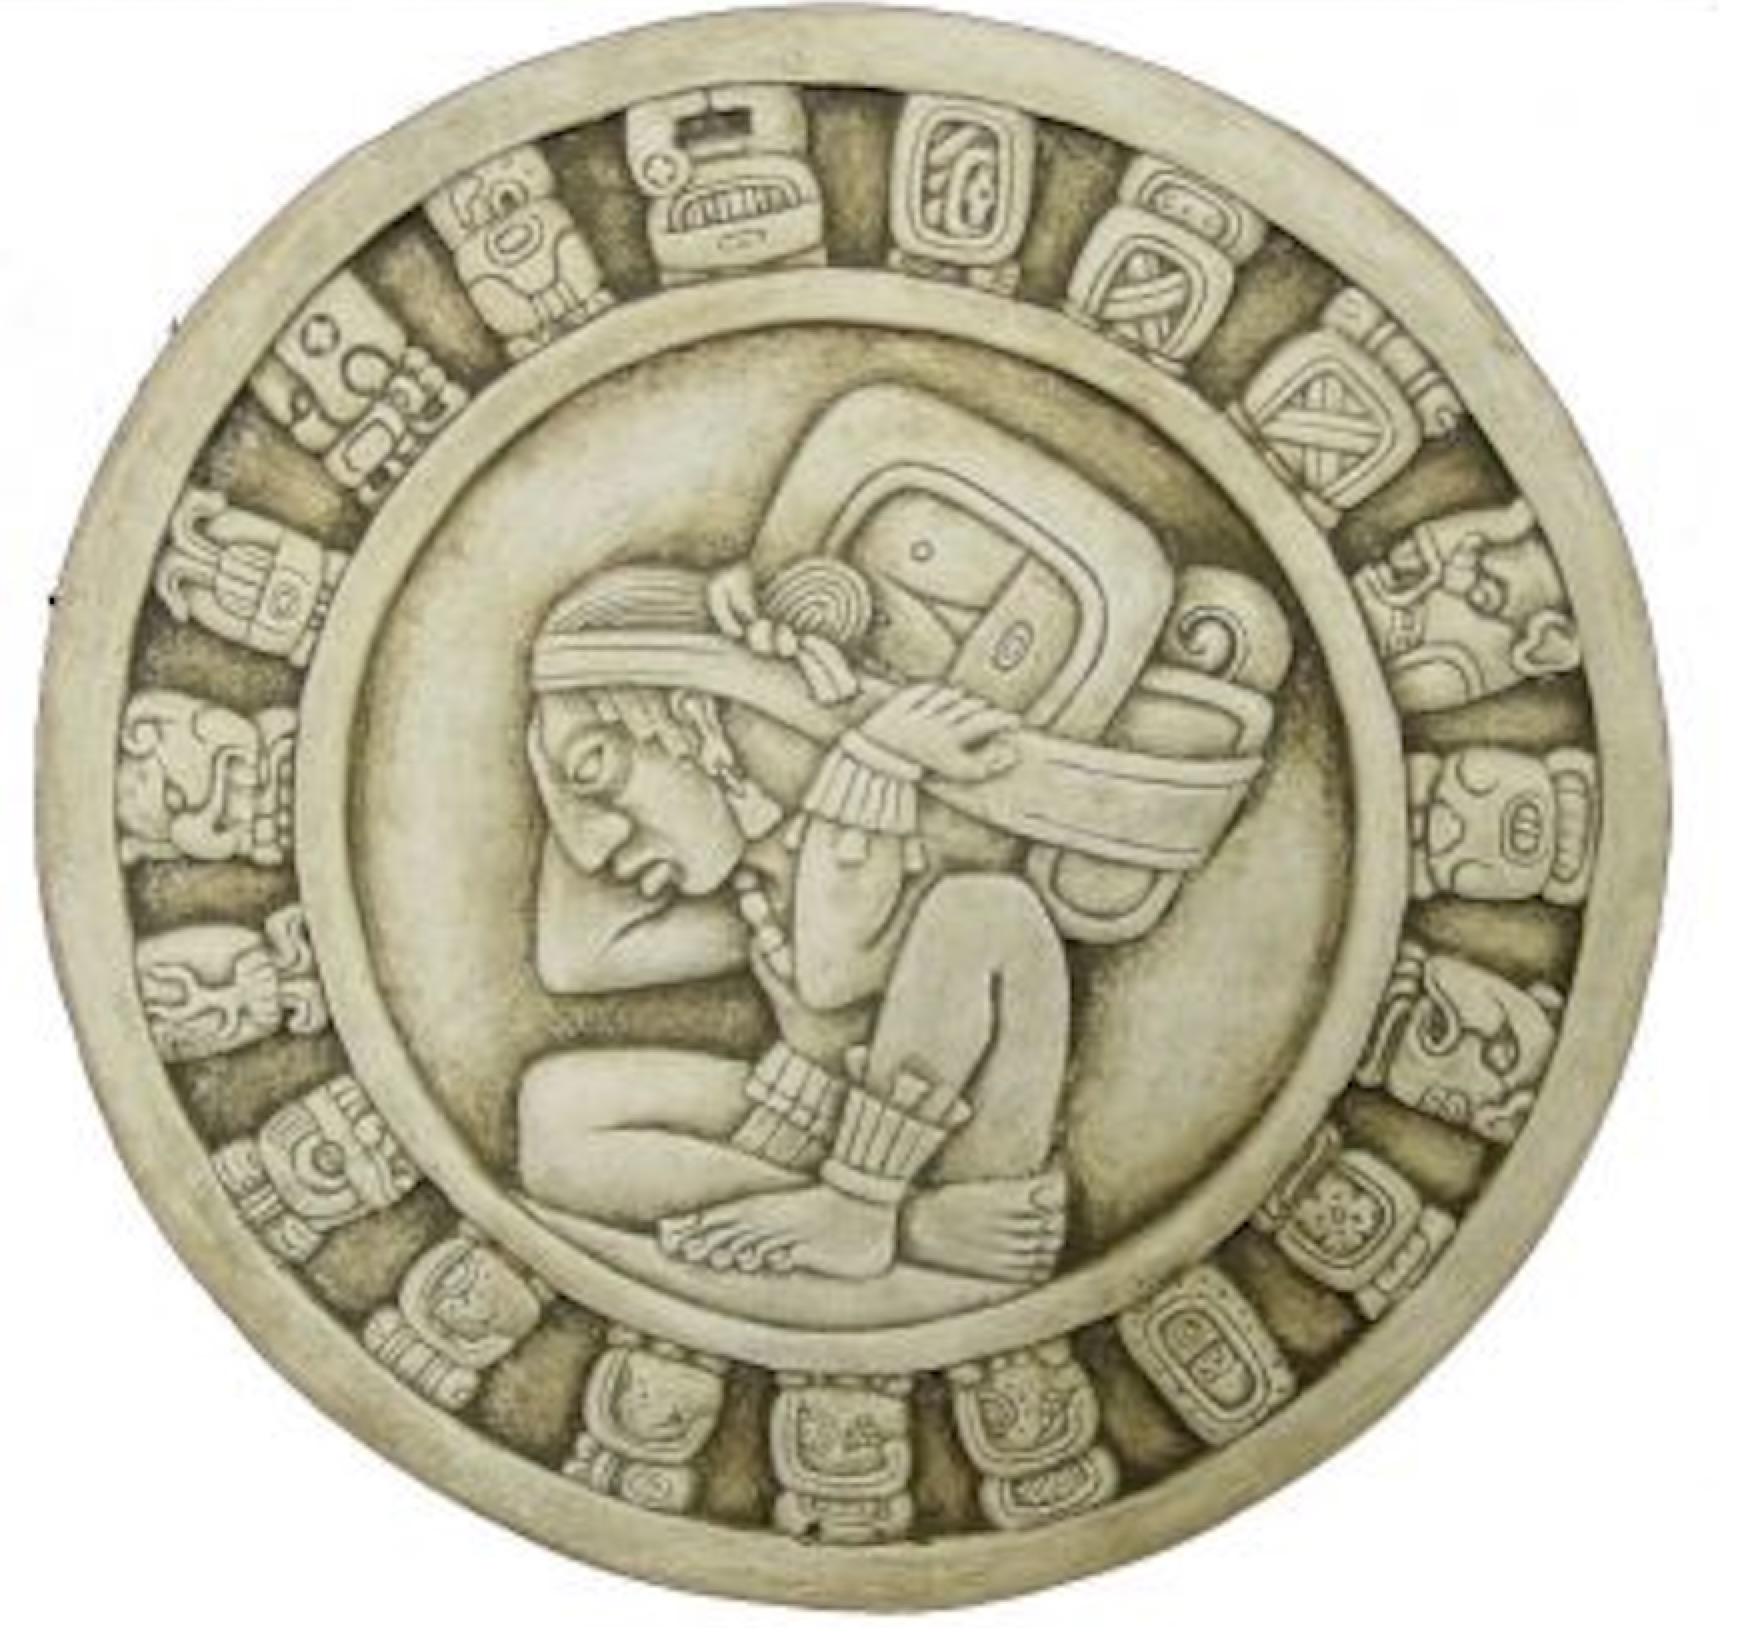 玛雅日历石质 库存图片. 图片 包括有 阿兹台克, 图形式, 日历, 附庸风雅, 象征性, 文化, 背包 - 174706281